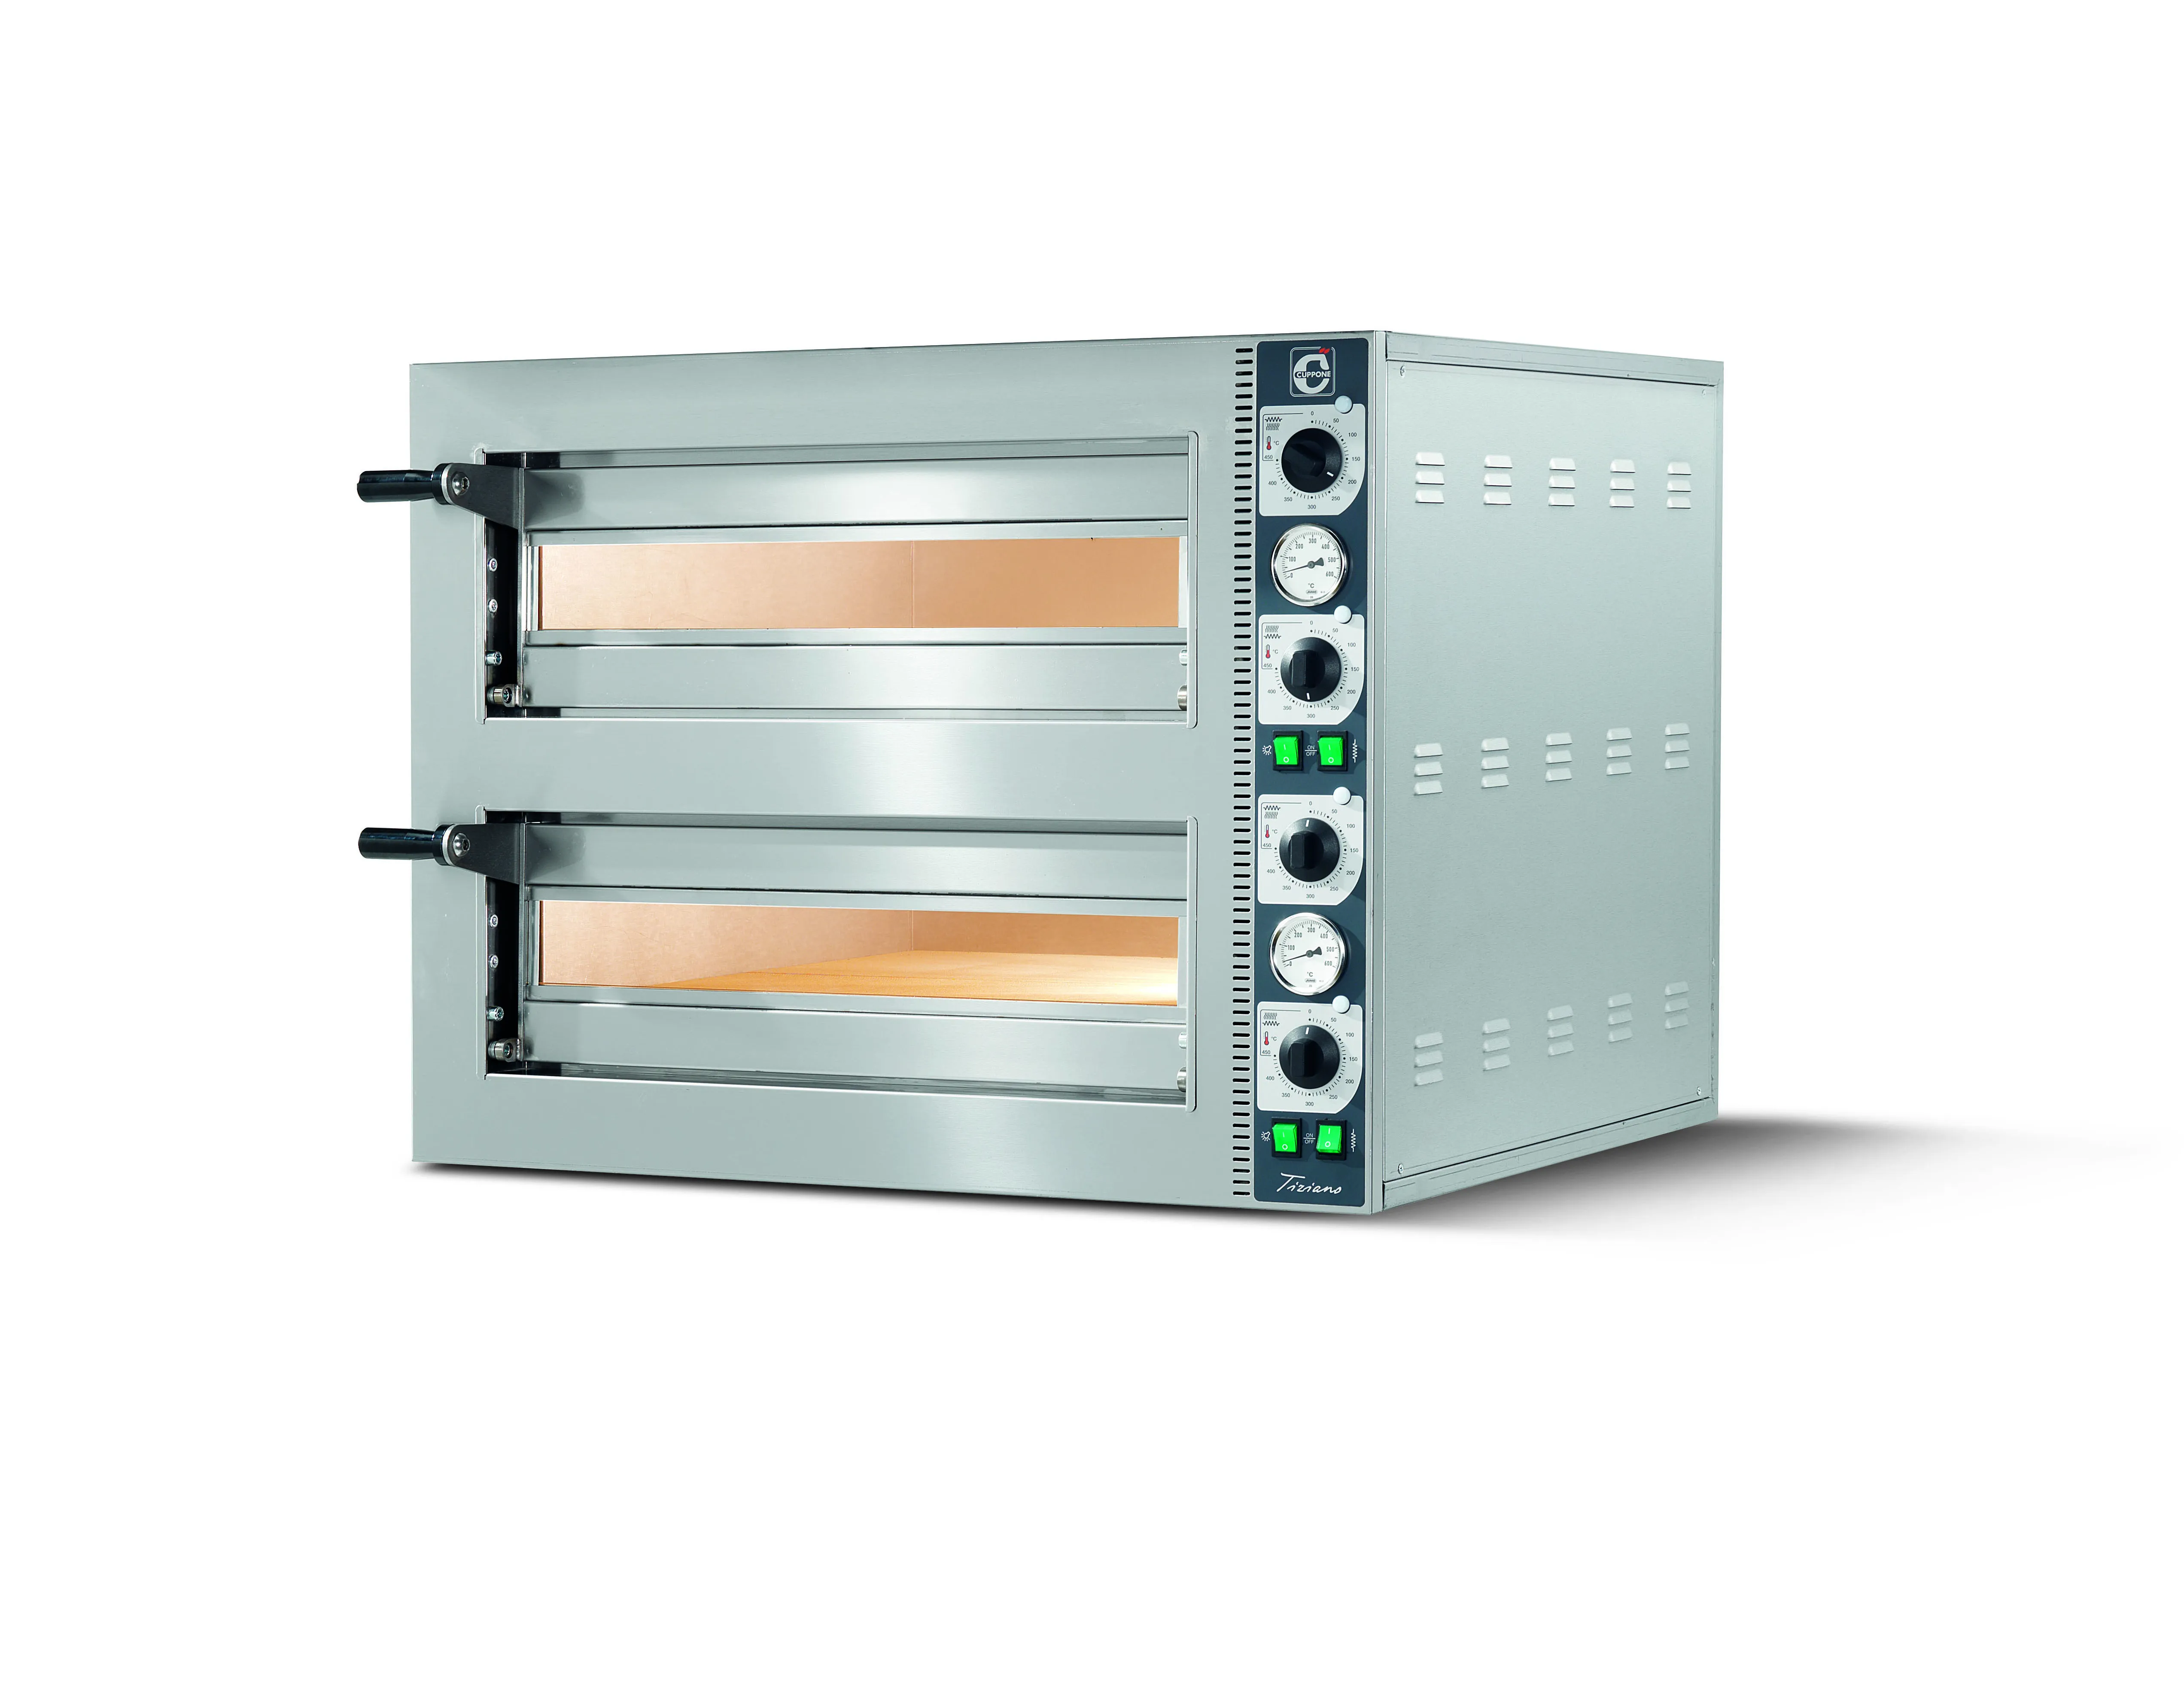 Cuppone LLKTZ6202 Tiziano Twin Deck Electric Pizza Oven